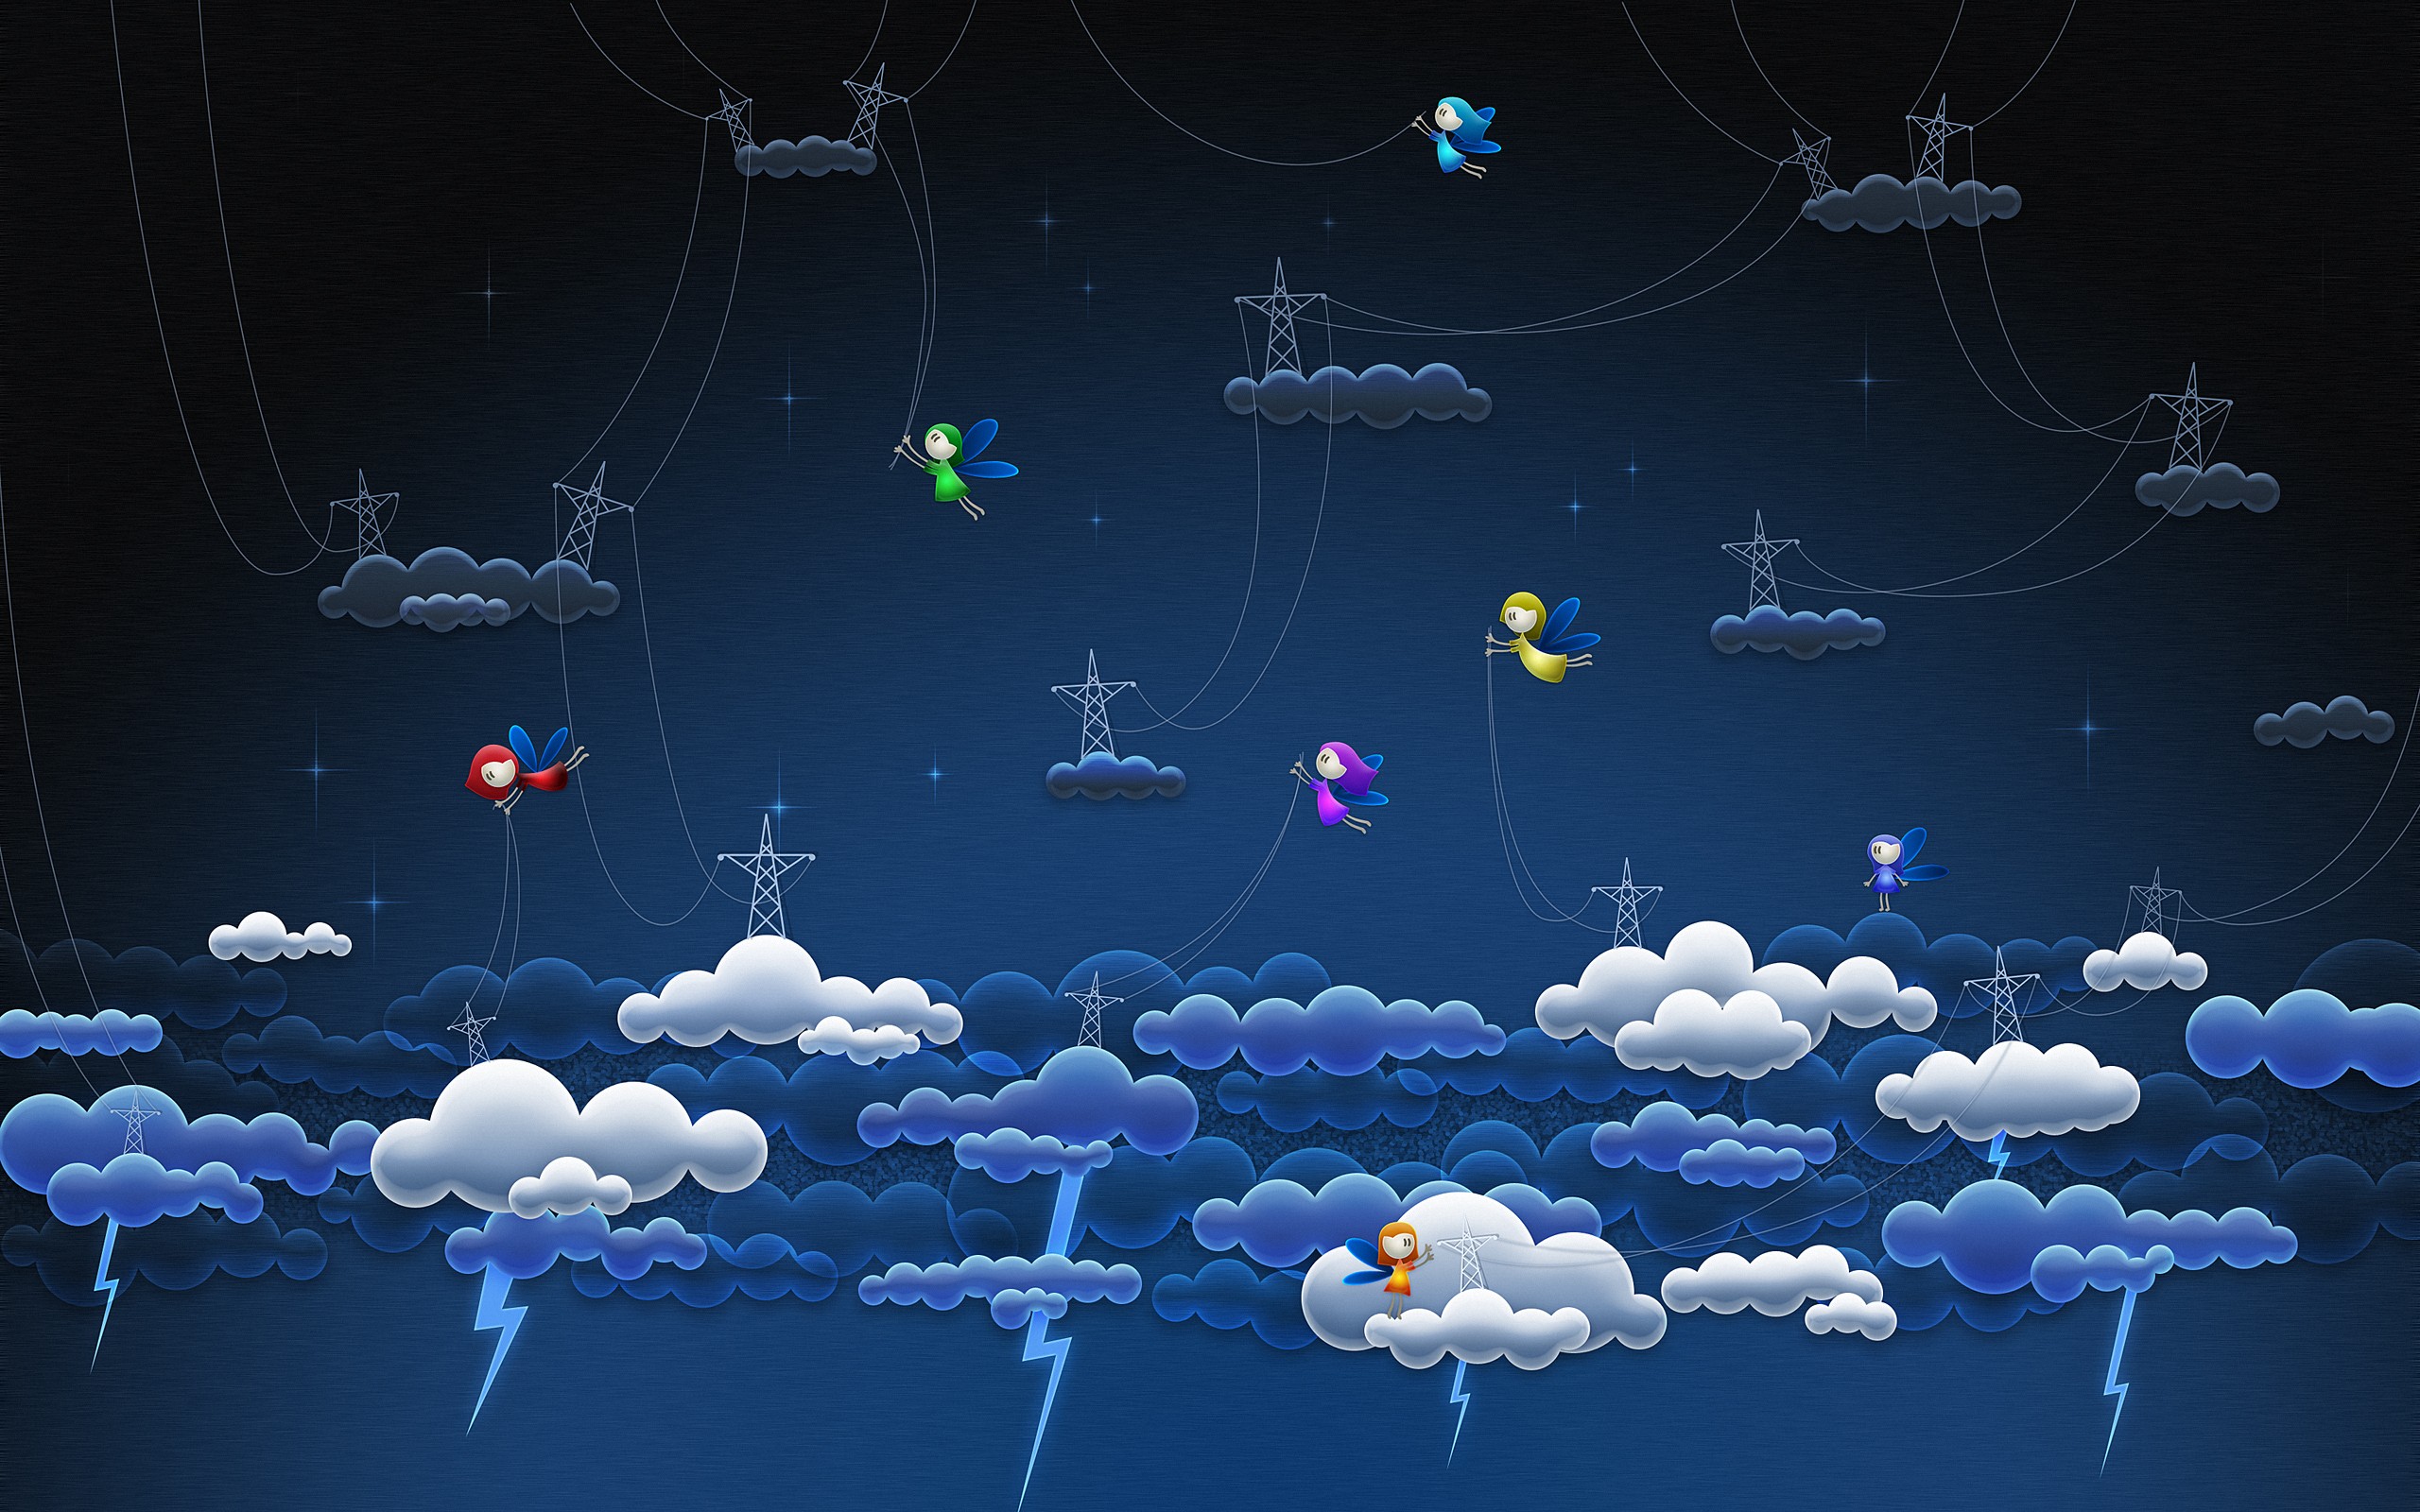 General 2560x1600 clouds digital art artwork power lines sky lightning wings